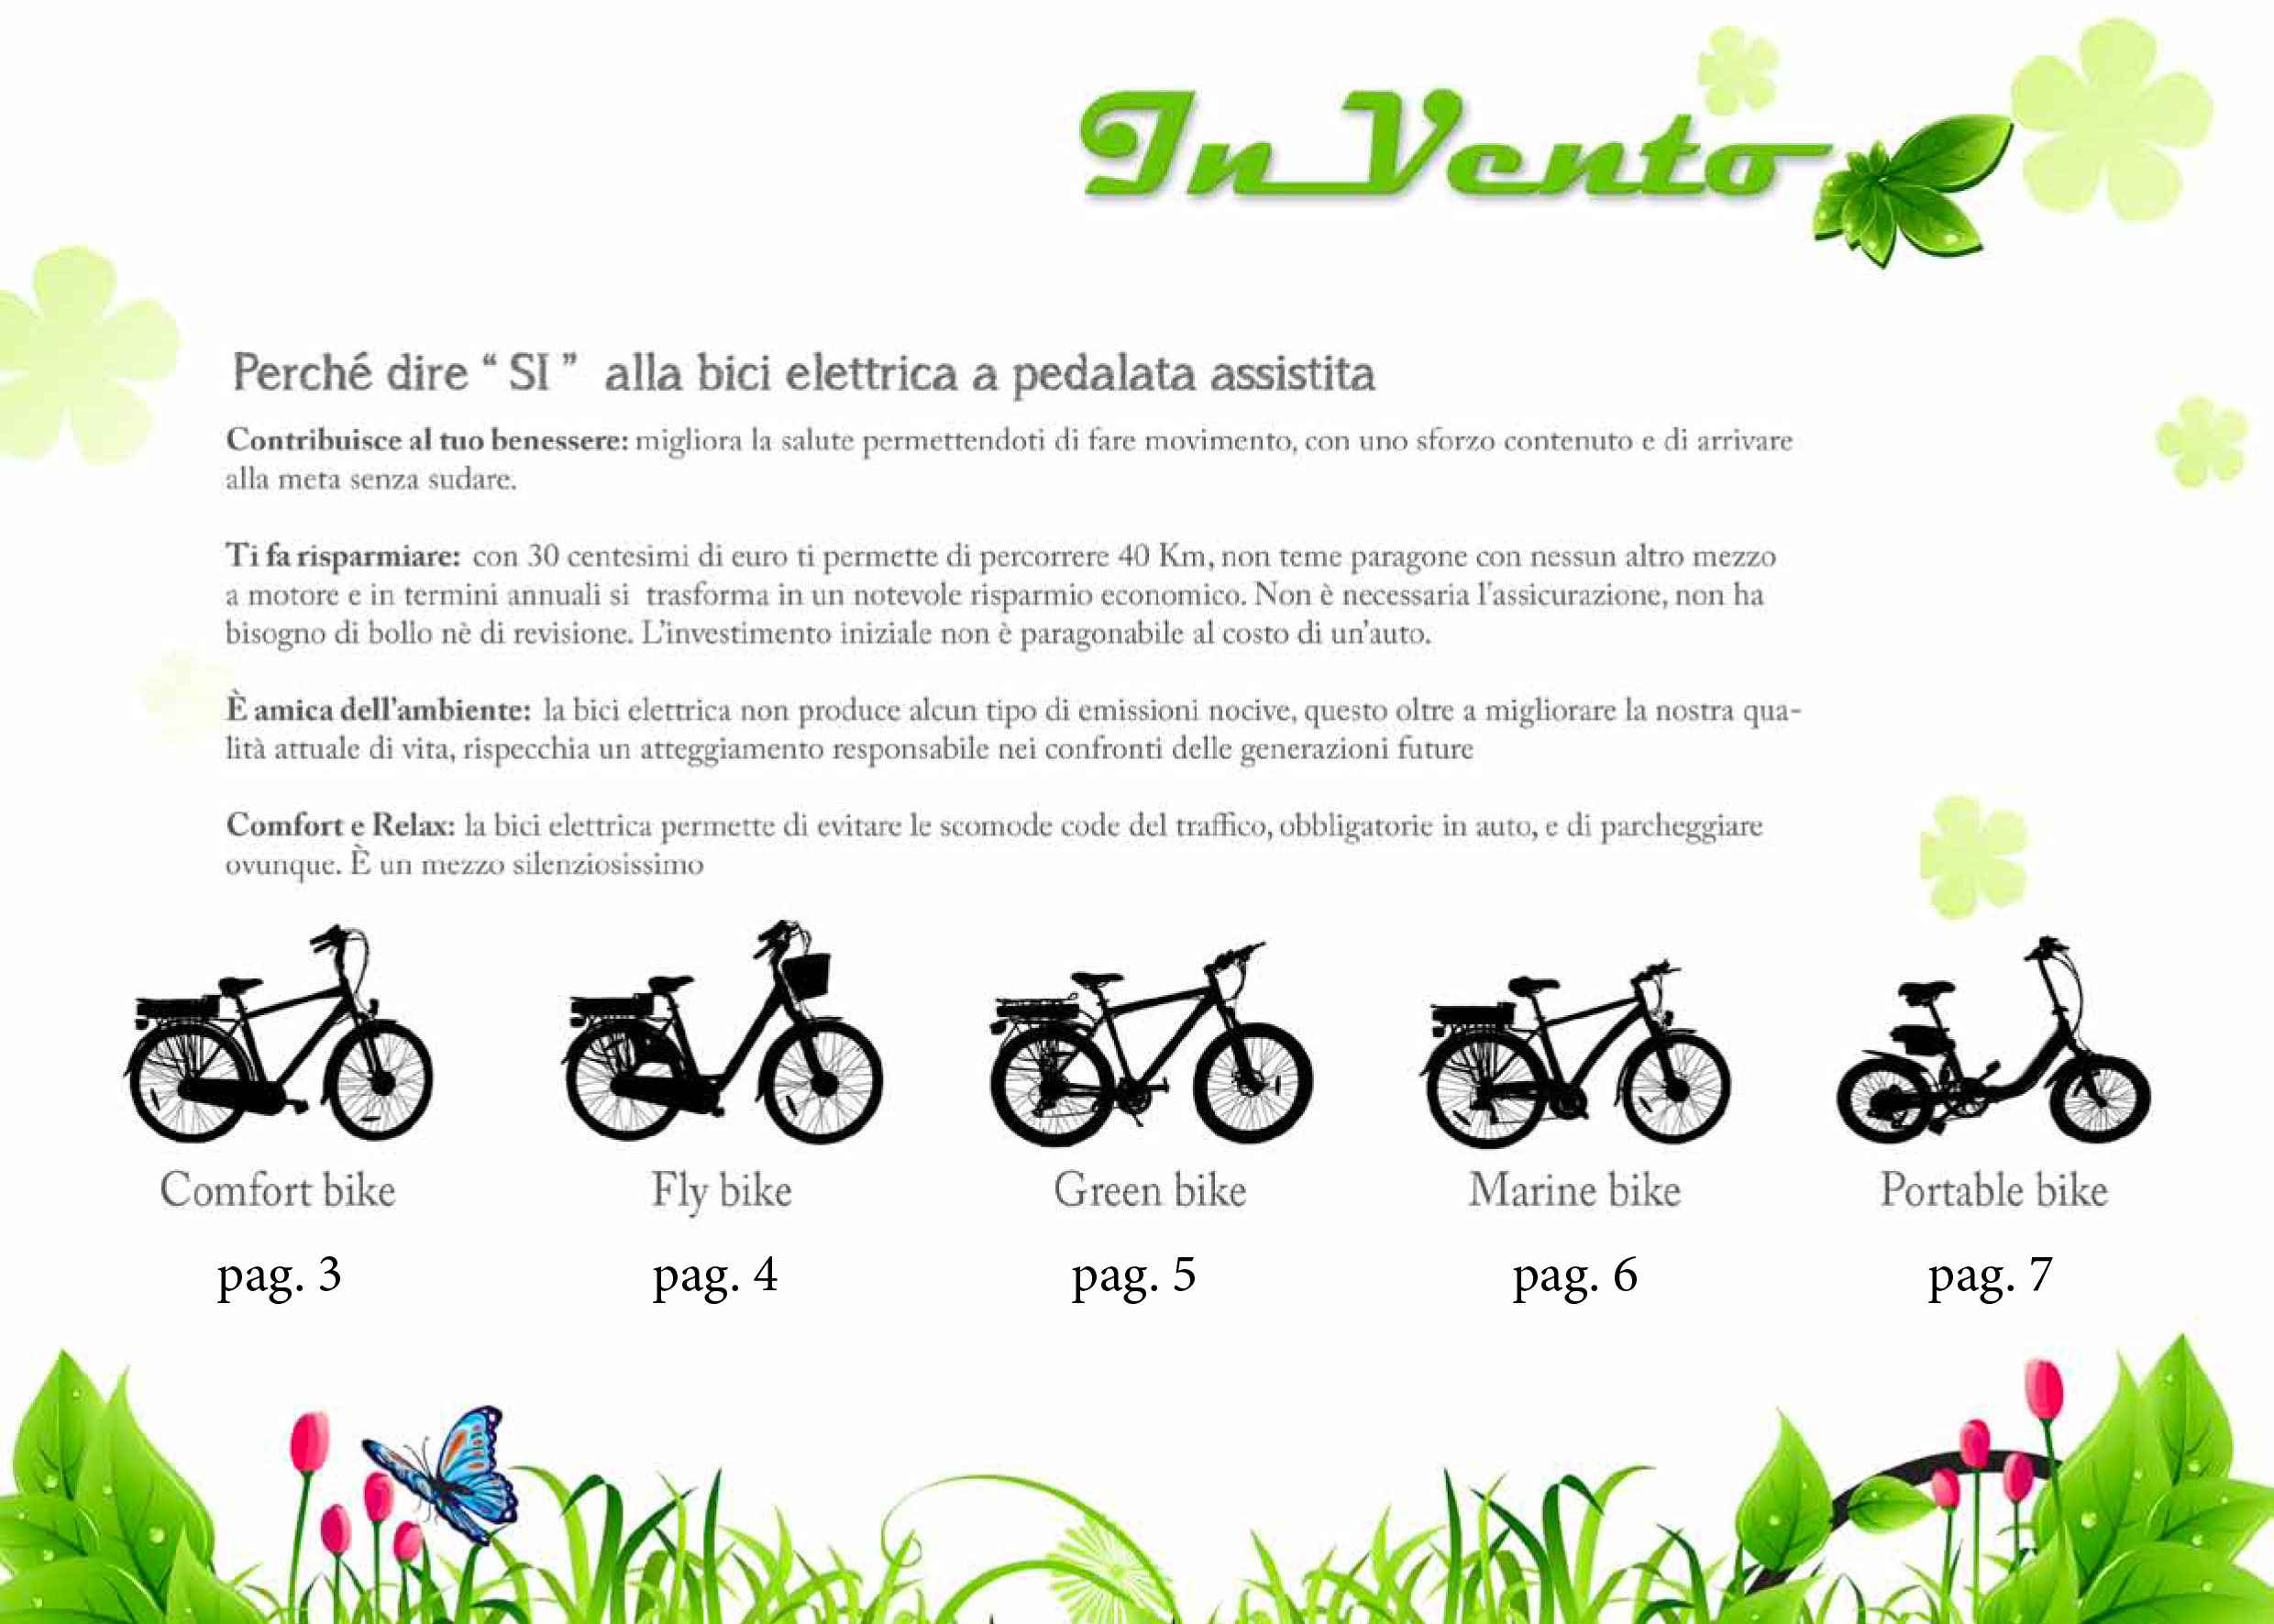 Progettazione grafica e pre stampa catalogo Invento bike